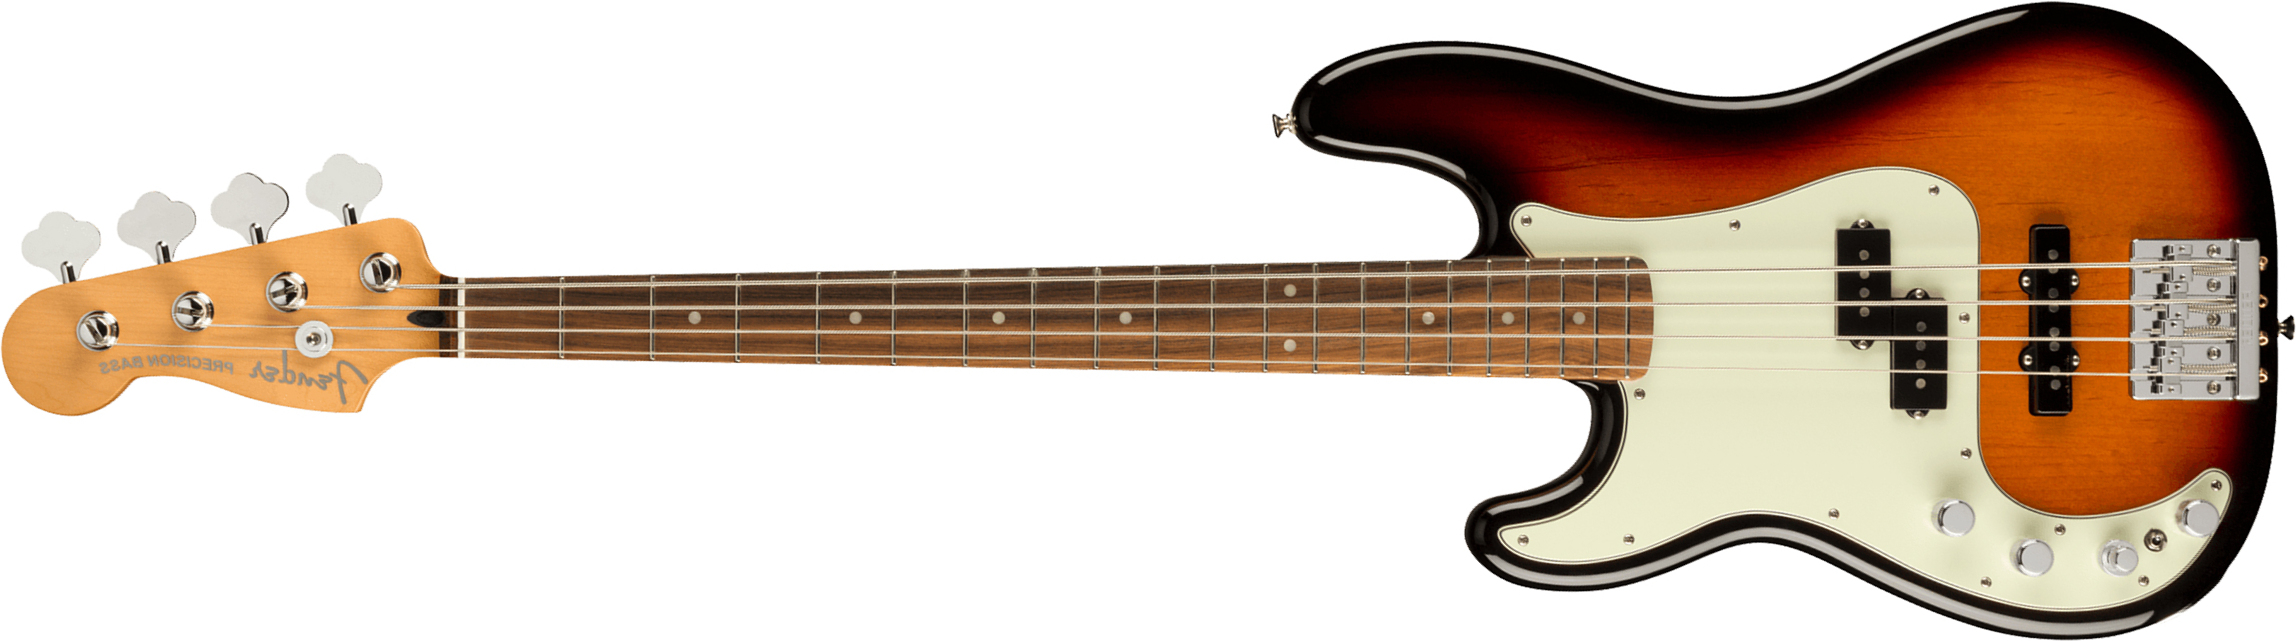 Fender Precision Bass Player Plus Lh Mex Gaucher Active Pf - 3-color Sunburst - Bajo eléctrico de cuerpo sólido - Main picture